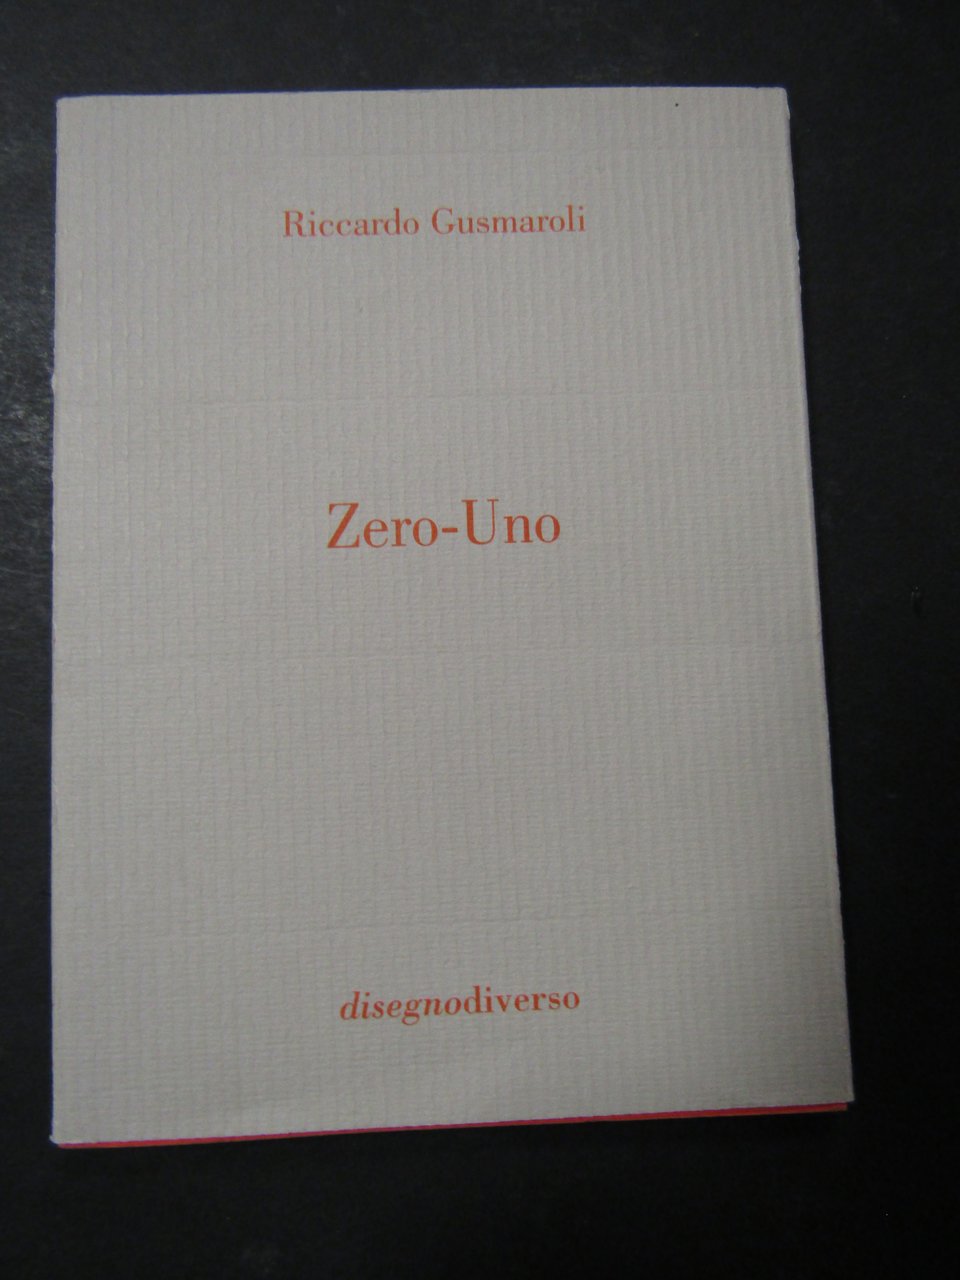 Gusmaroli Riccardo. Zero-uno. Disegnodiverso. 2001